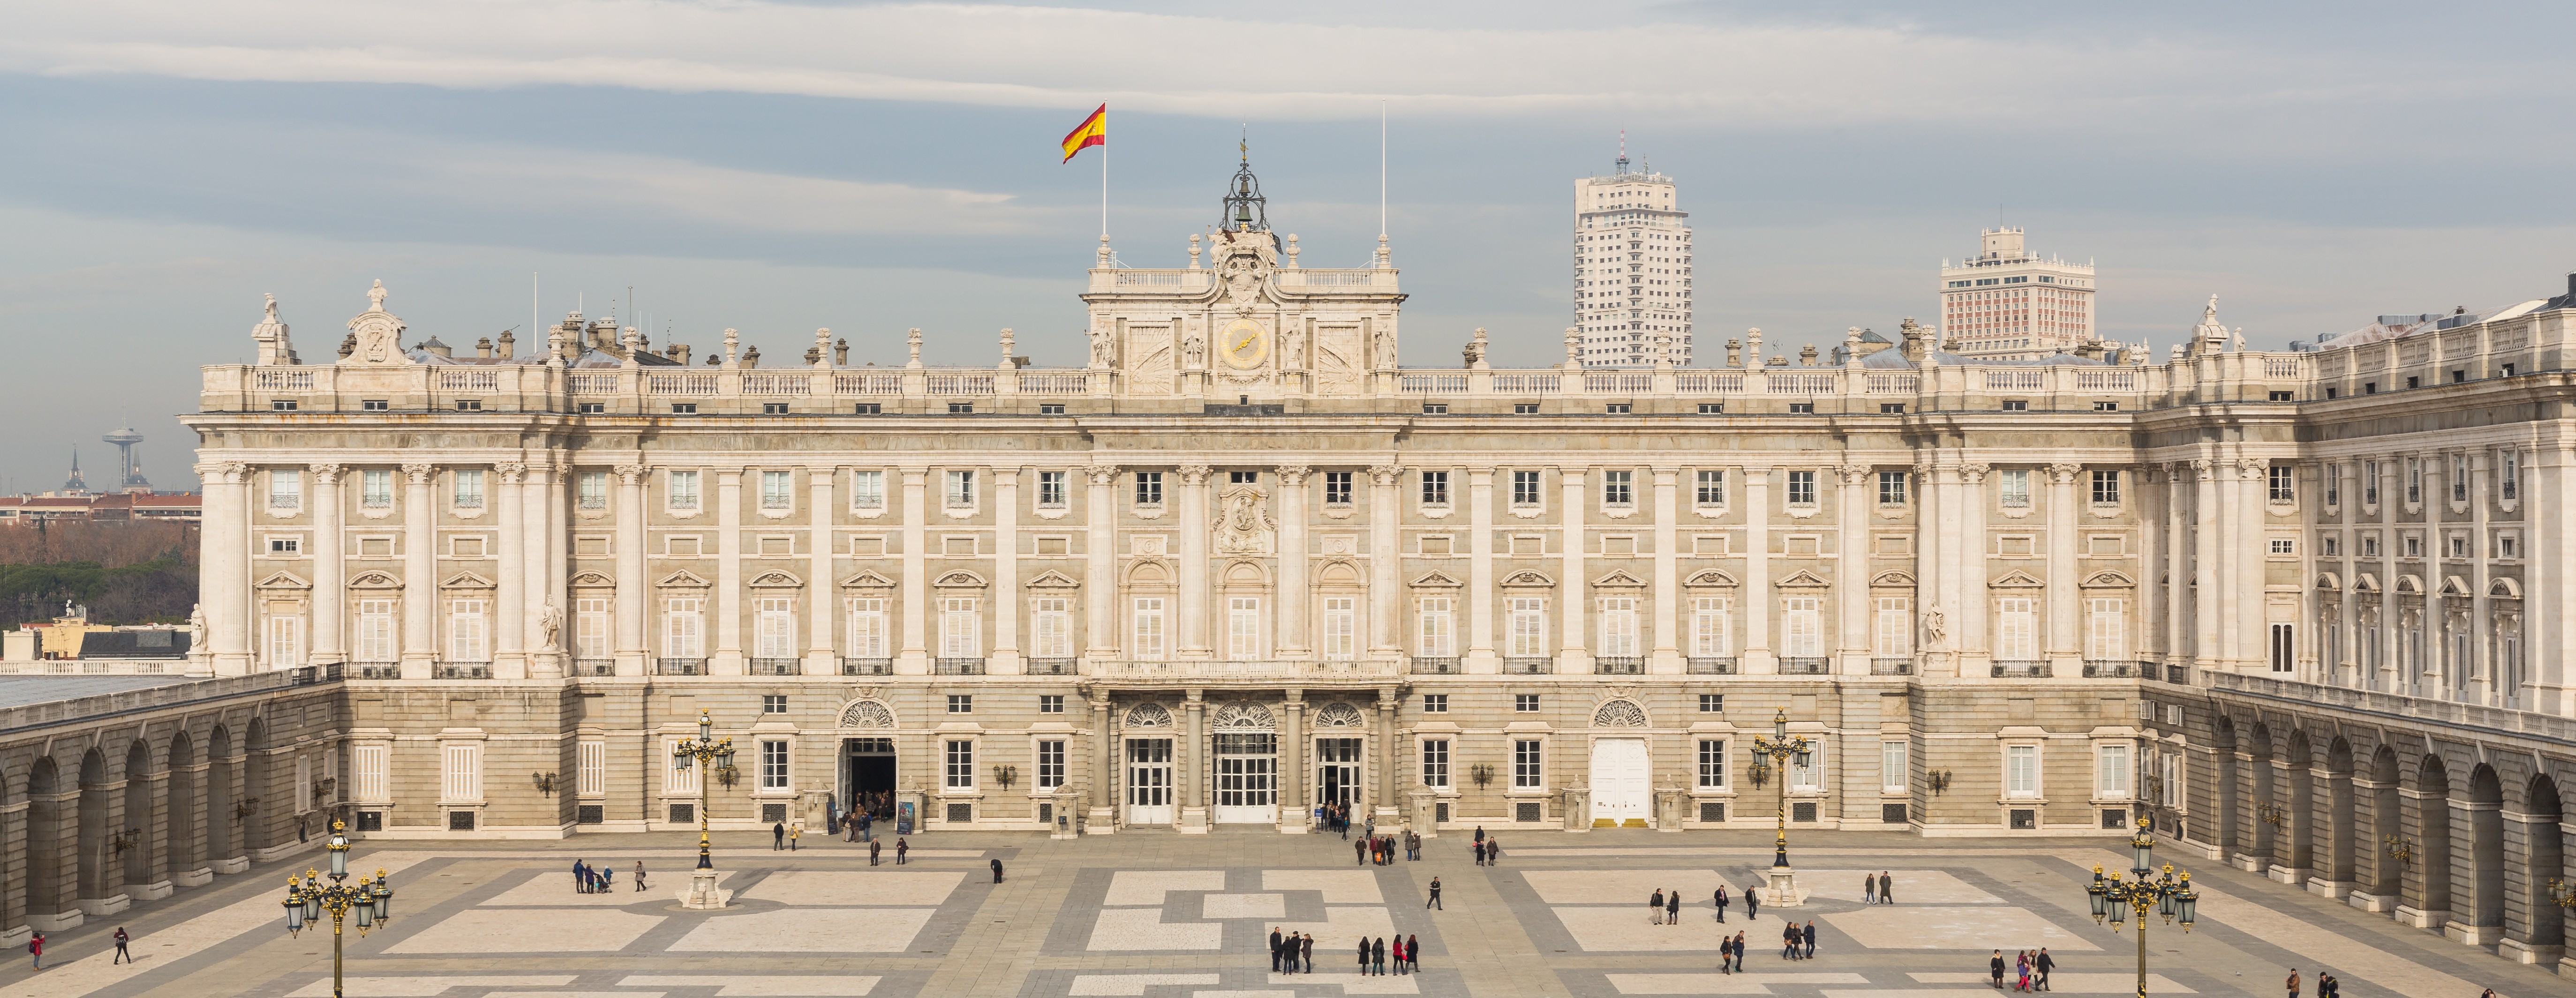 El Palacio Real de Madrid, el mayor de toda Europa | Lugares con ...